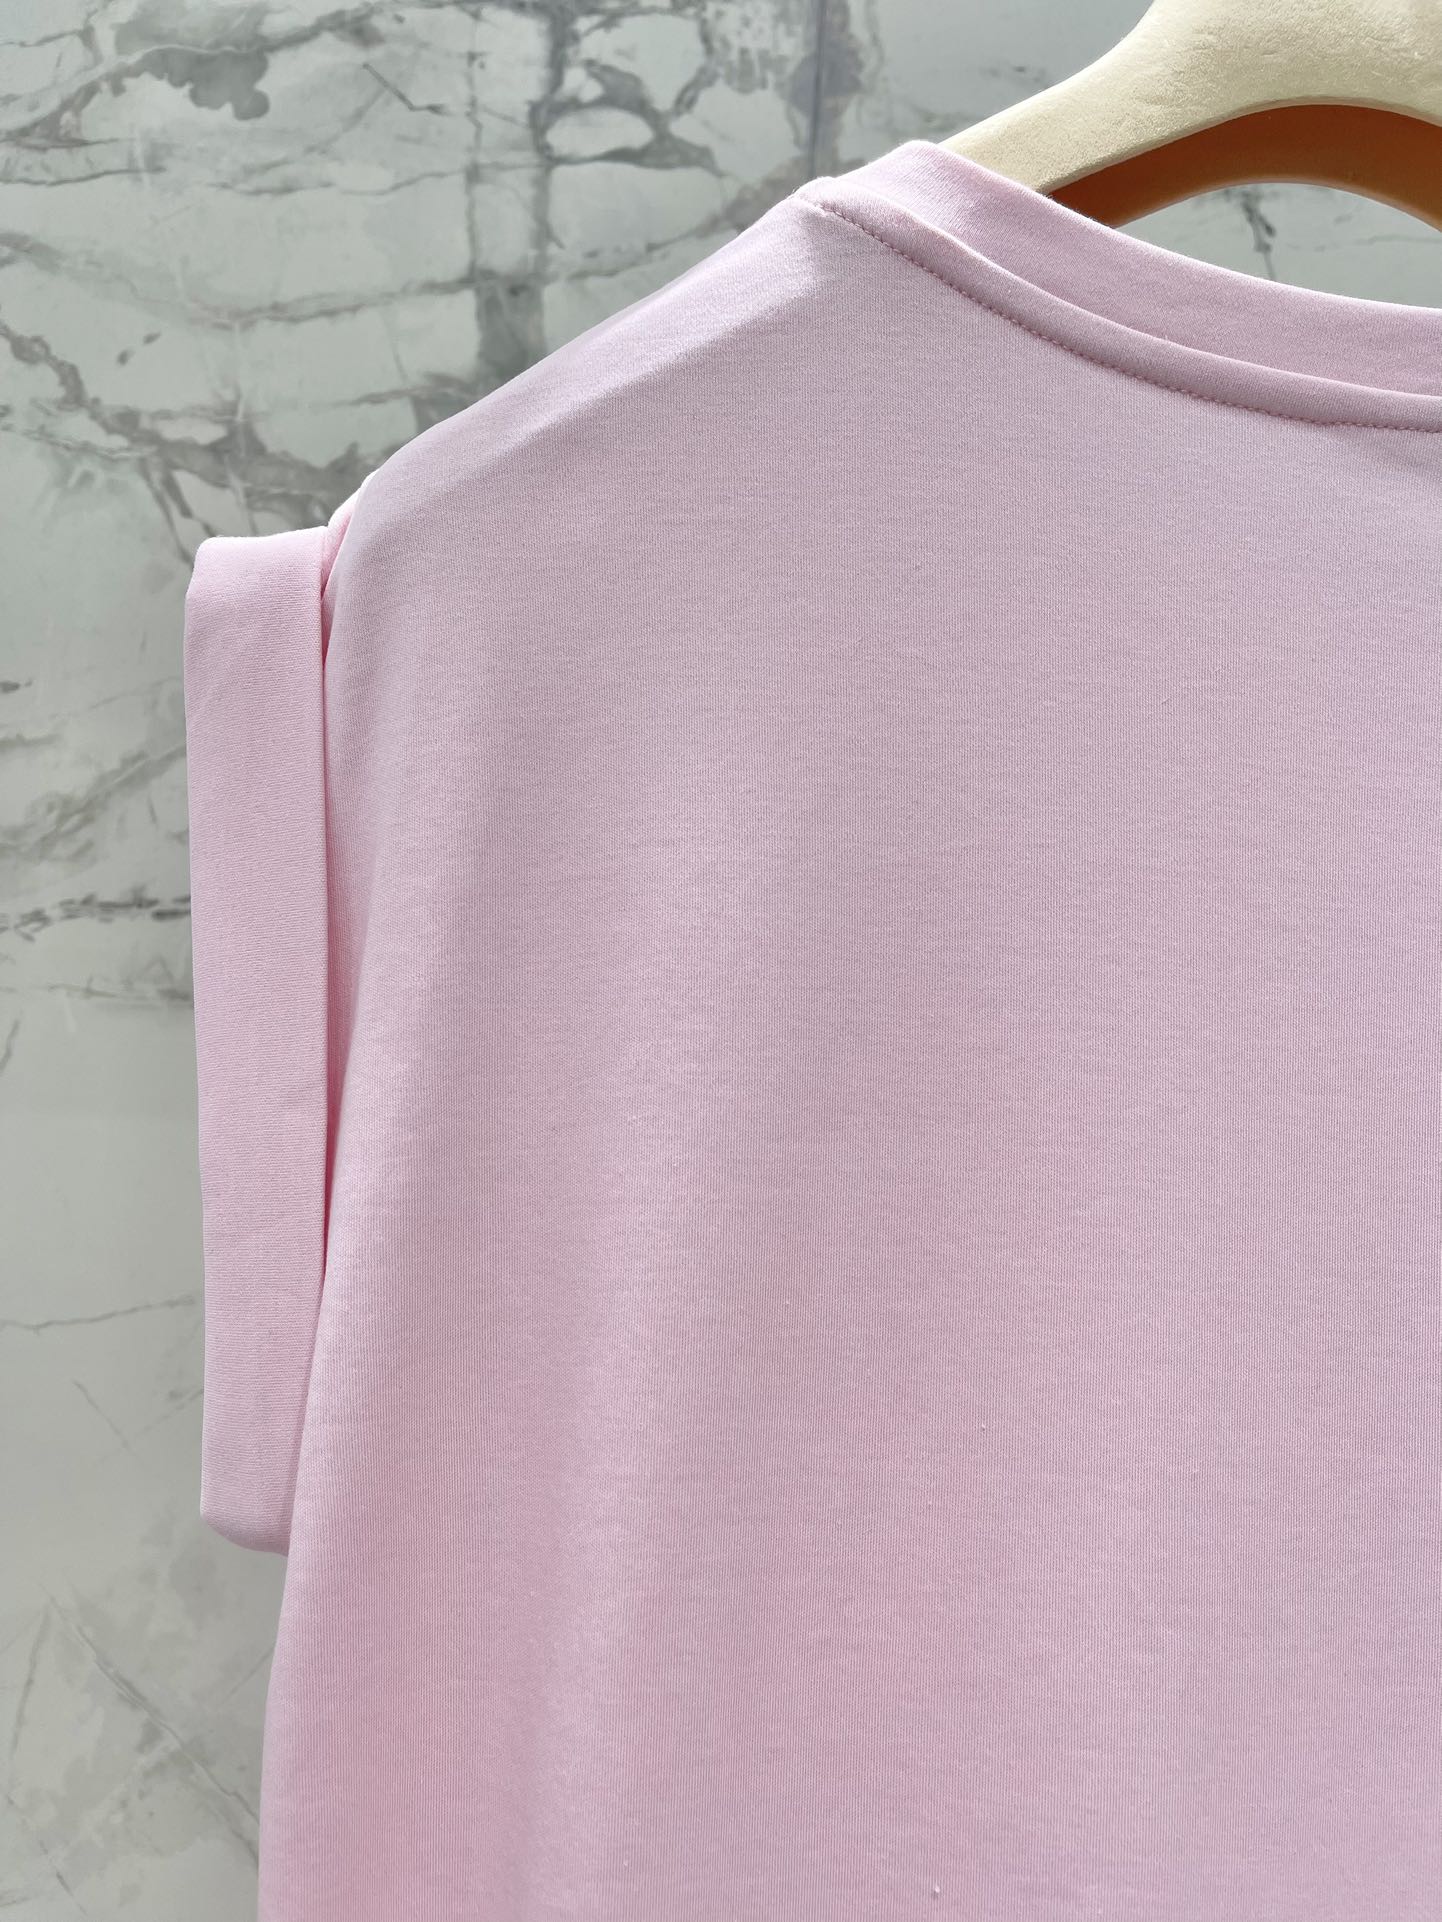 ミュウミュウスカーフスーパーコピー 柔らかい 無袖 Tシャツ トップス ファッション カジュアル 人気 シンプル ピンク_6